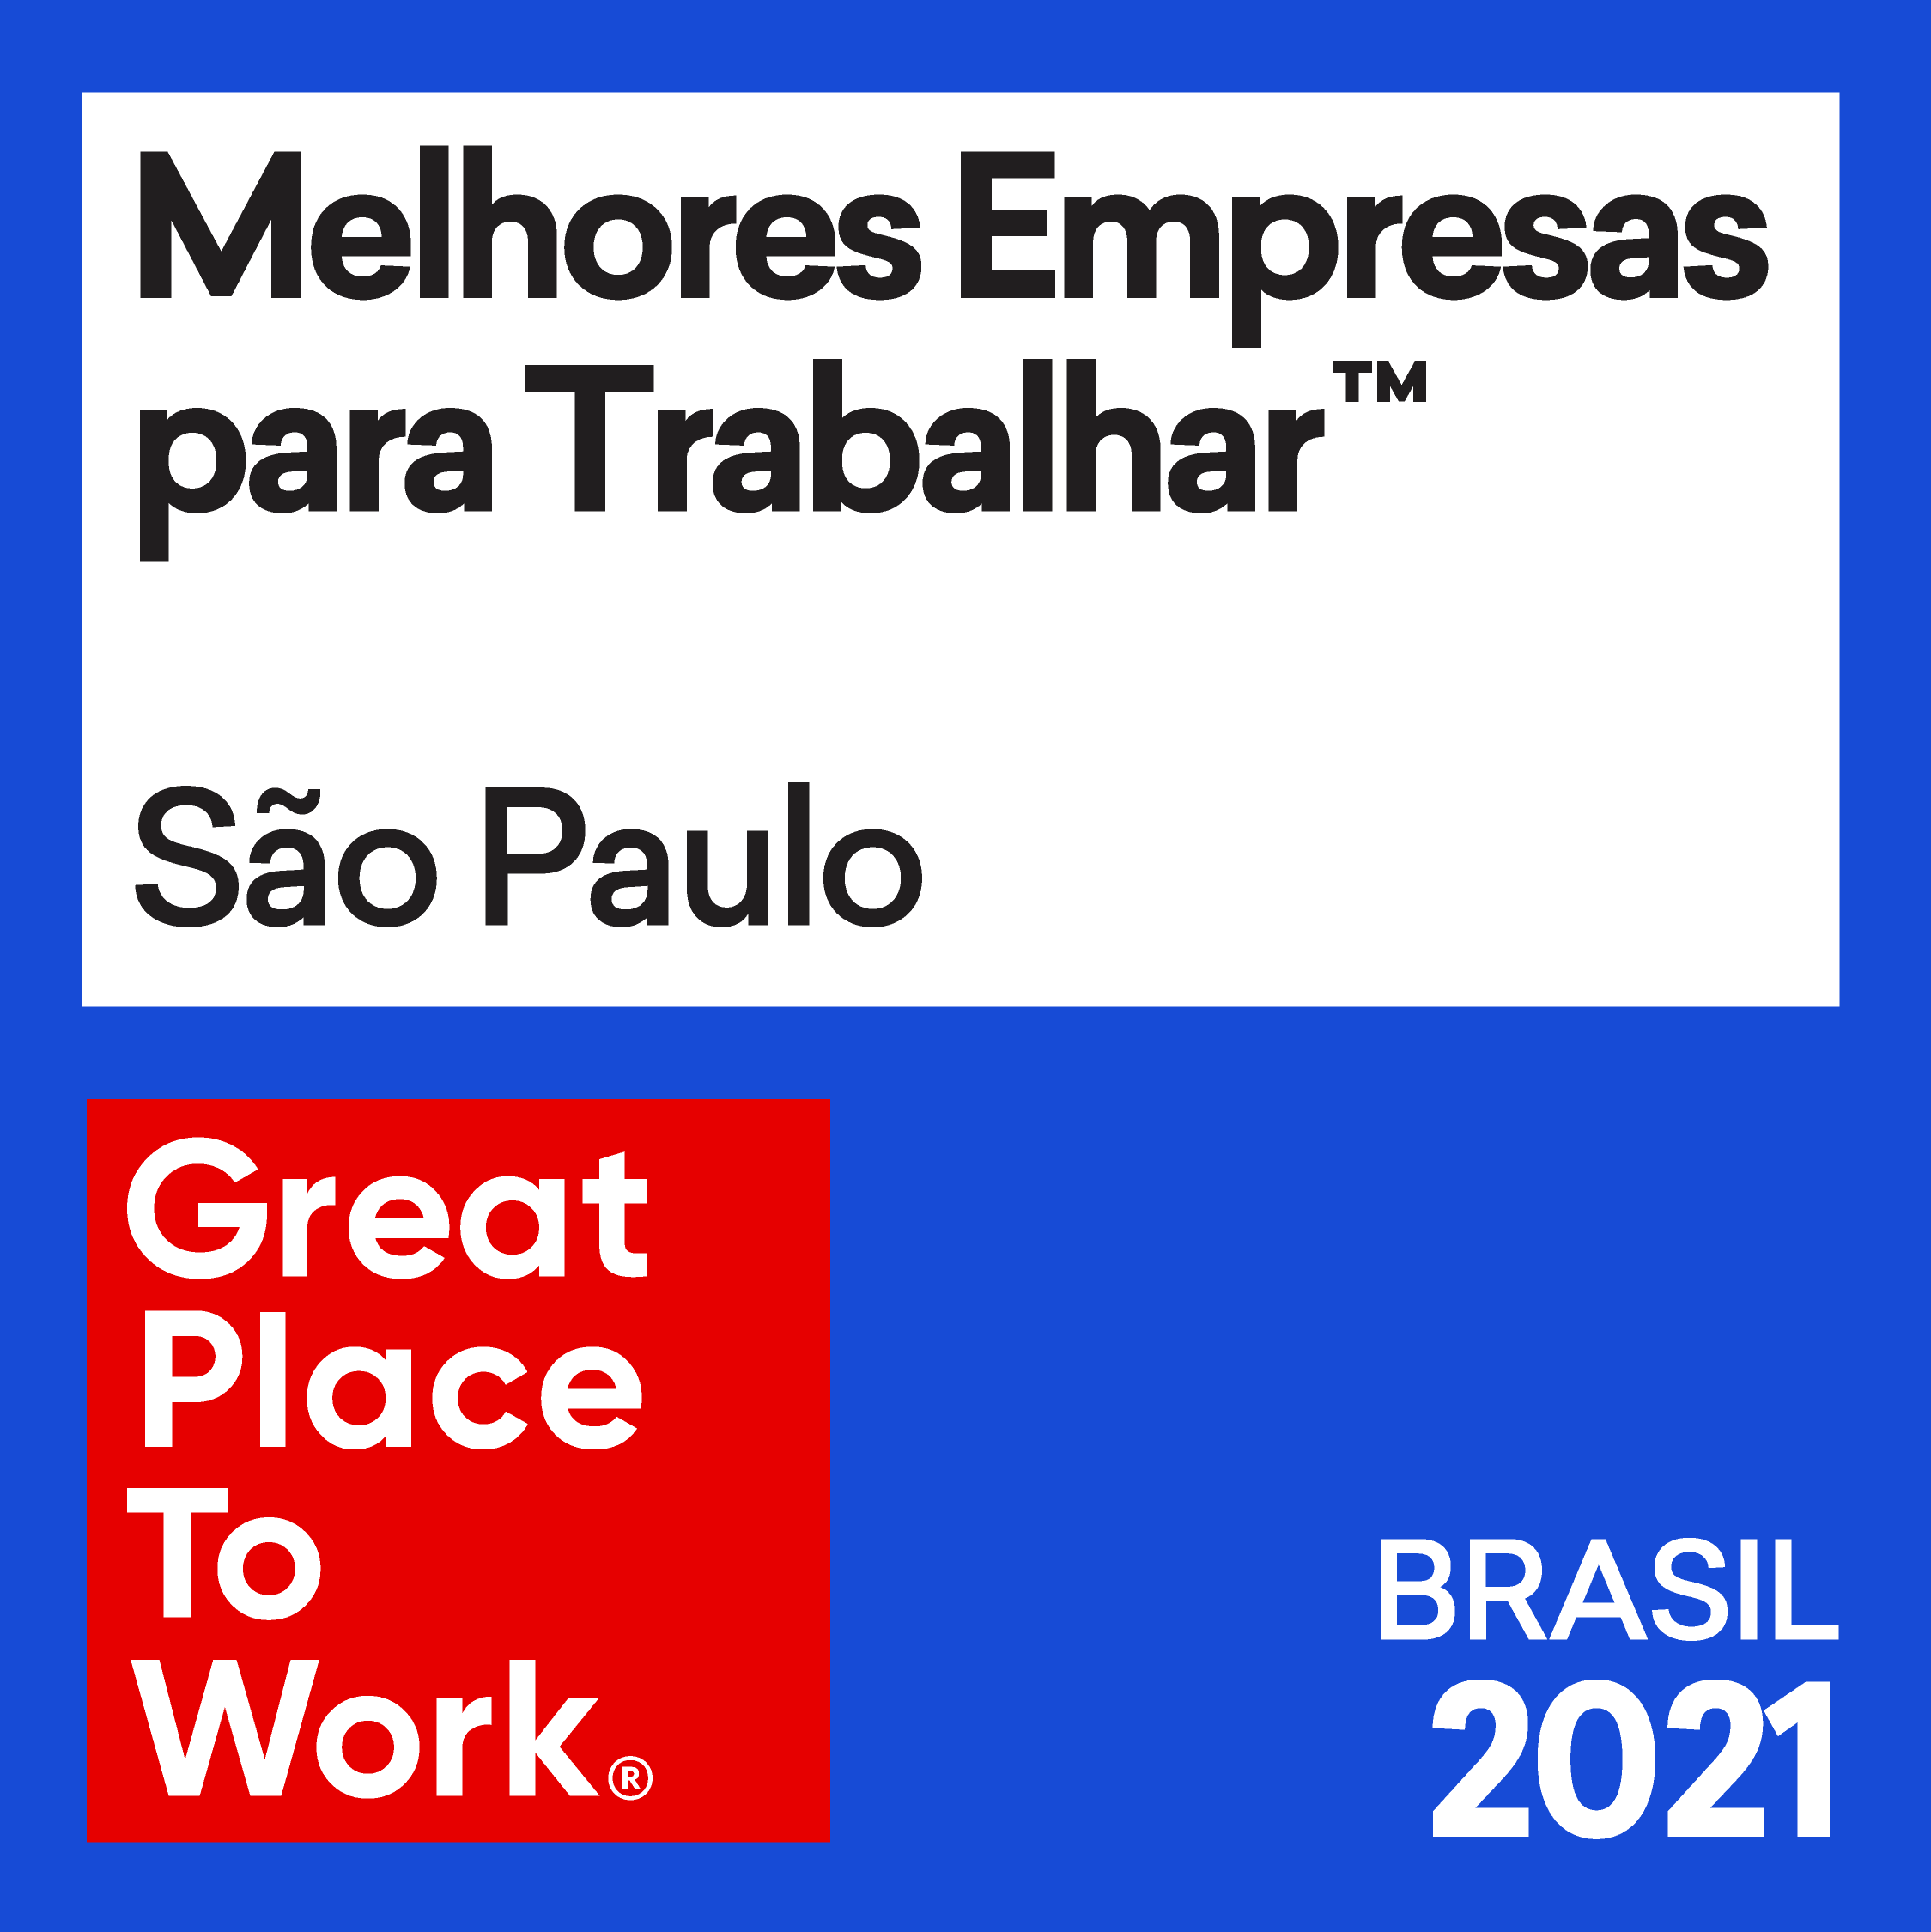 Melhores Empresas para Trabalhar Sao Paulo